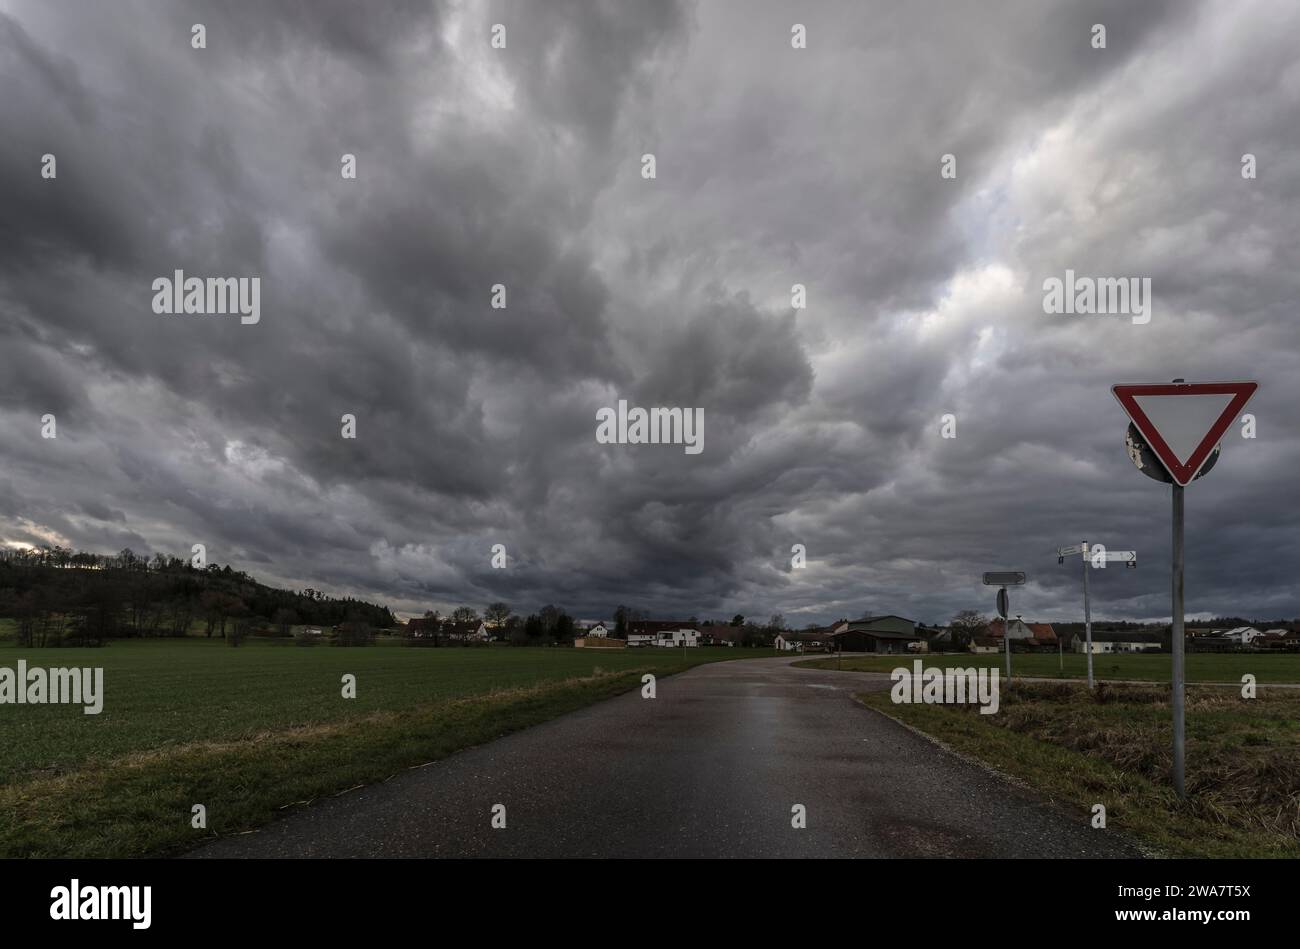 Dramatische Sturmwolken in einer ländlichen Landschaft. Stockfoto